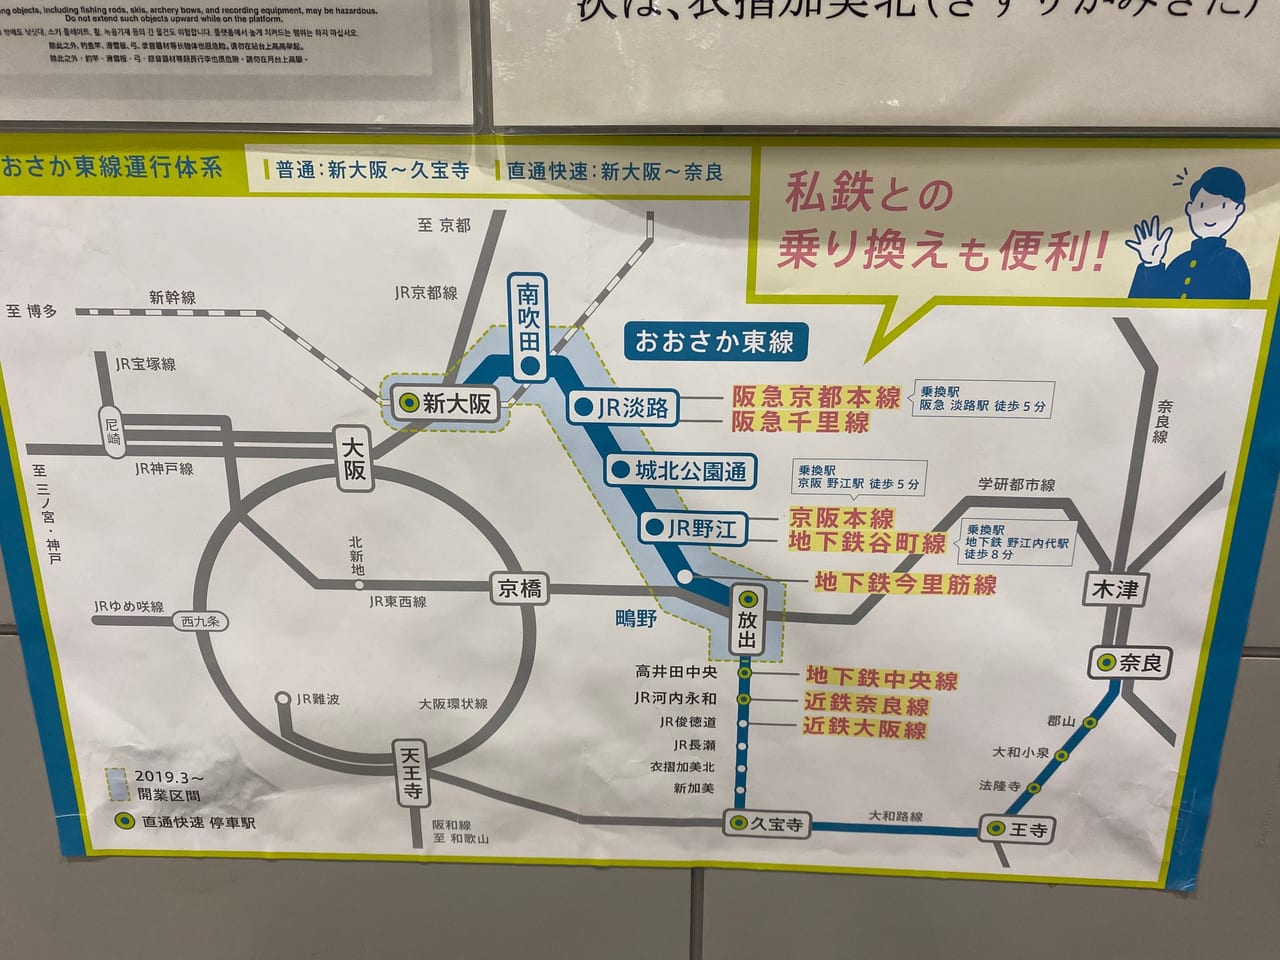 大阪東線運行体系